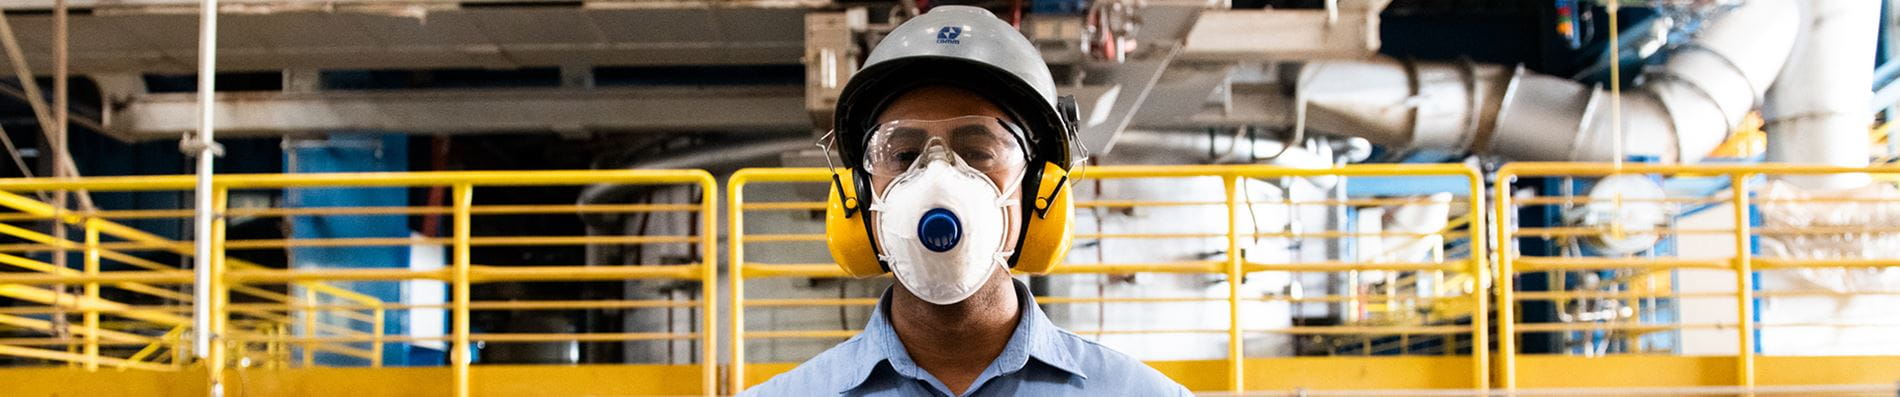 Trabalhador da CBMM com máscara de proteção